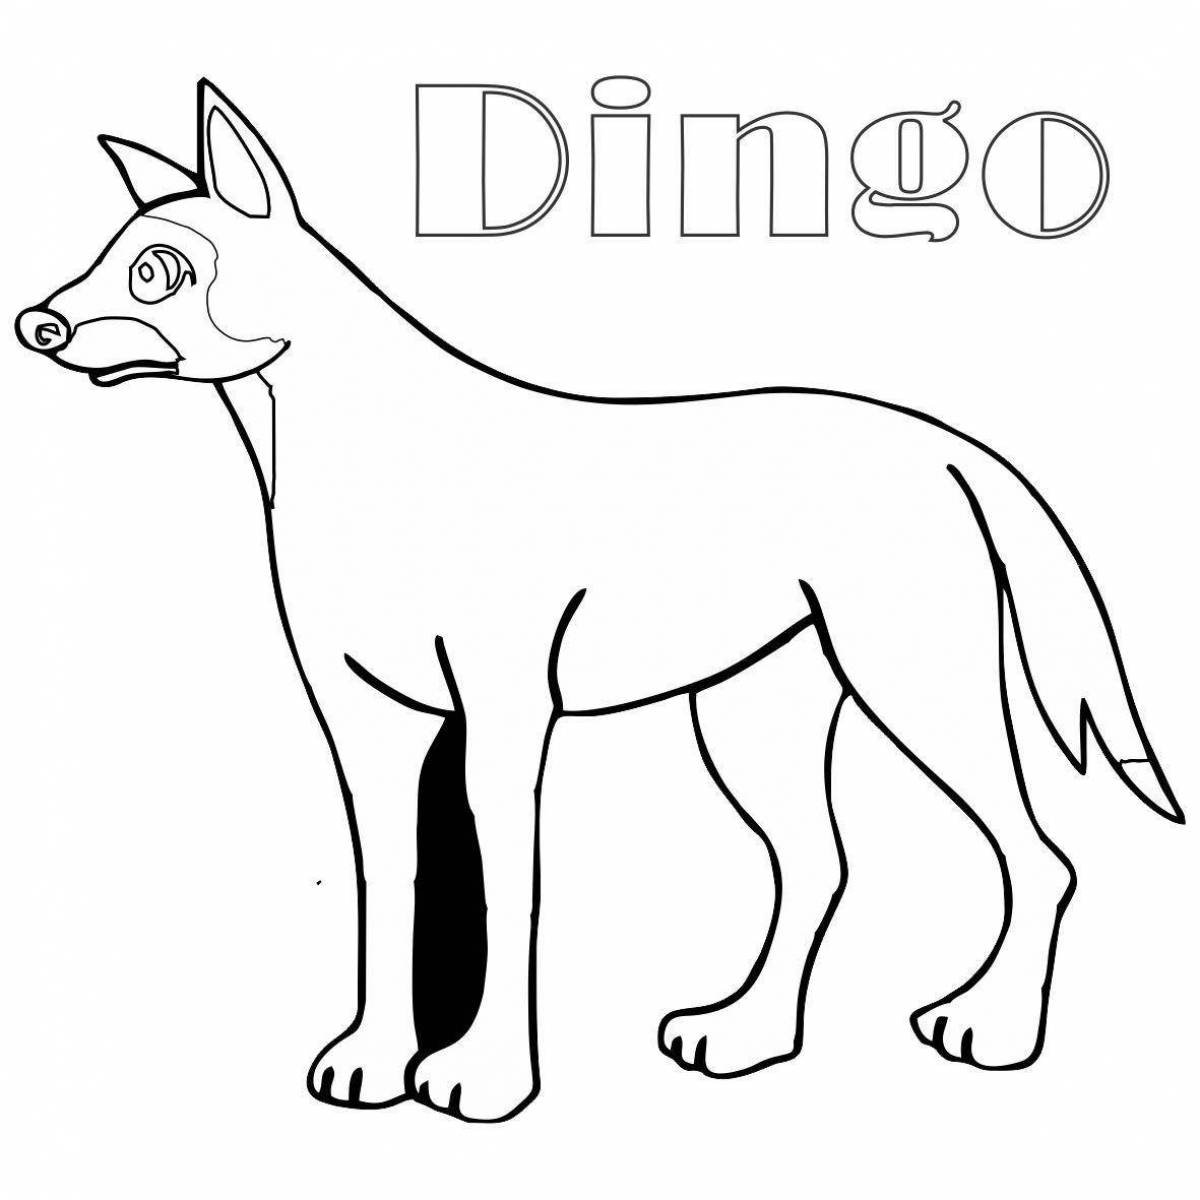 Собака динго распечатать. Собака Динго раскраска для детей. Собака Динго рисунок. Собака Бинго раскраска для малышей. Динго карандашом.